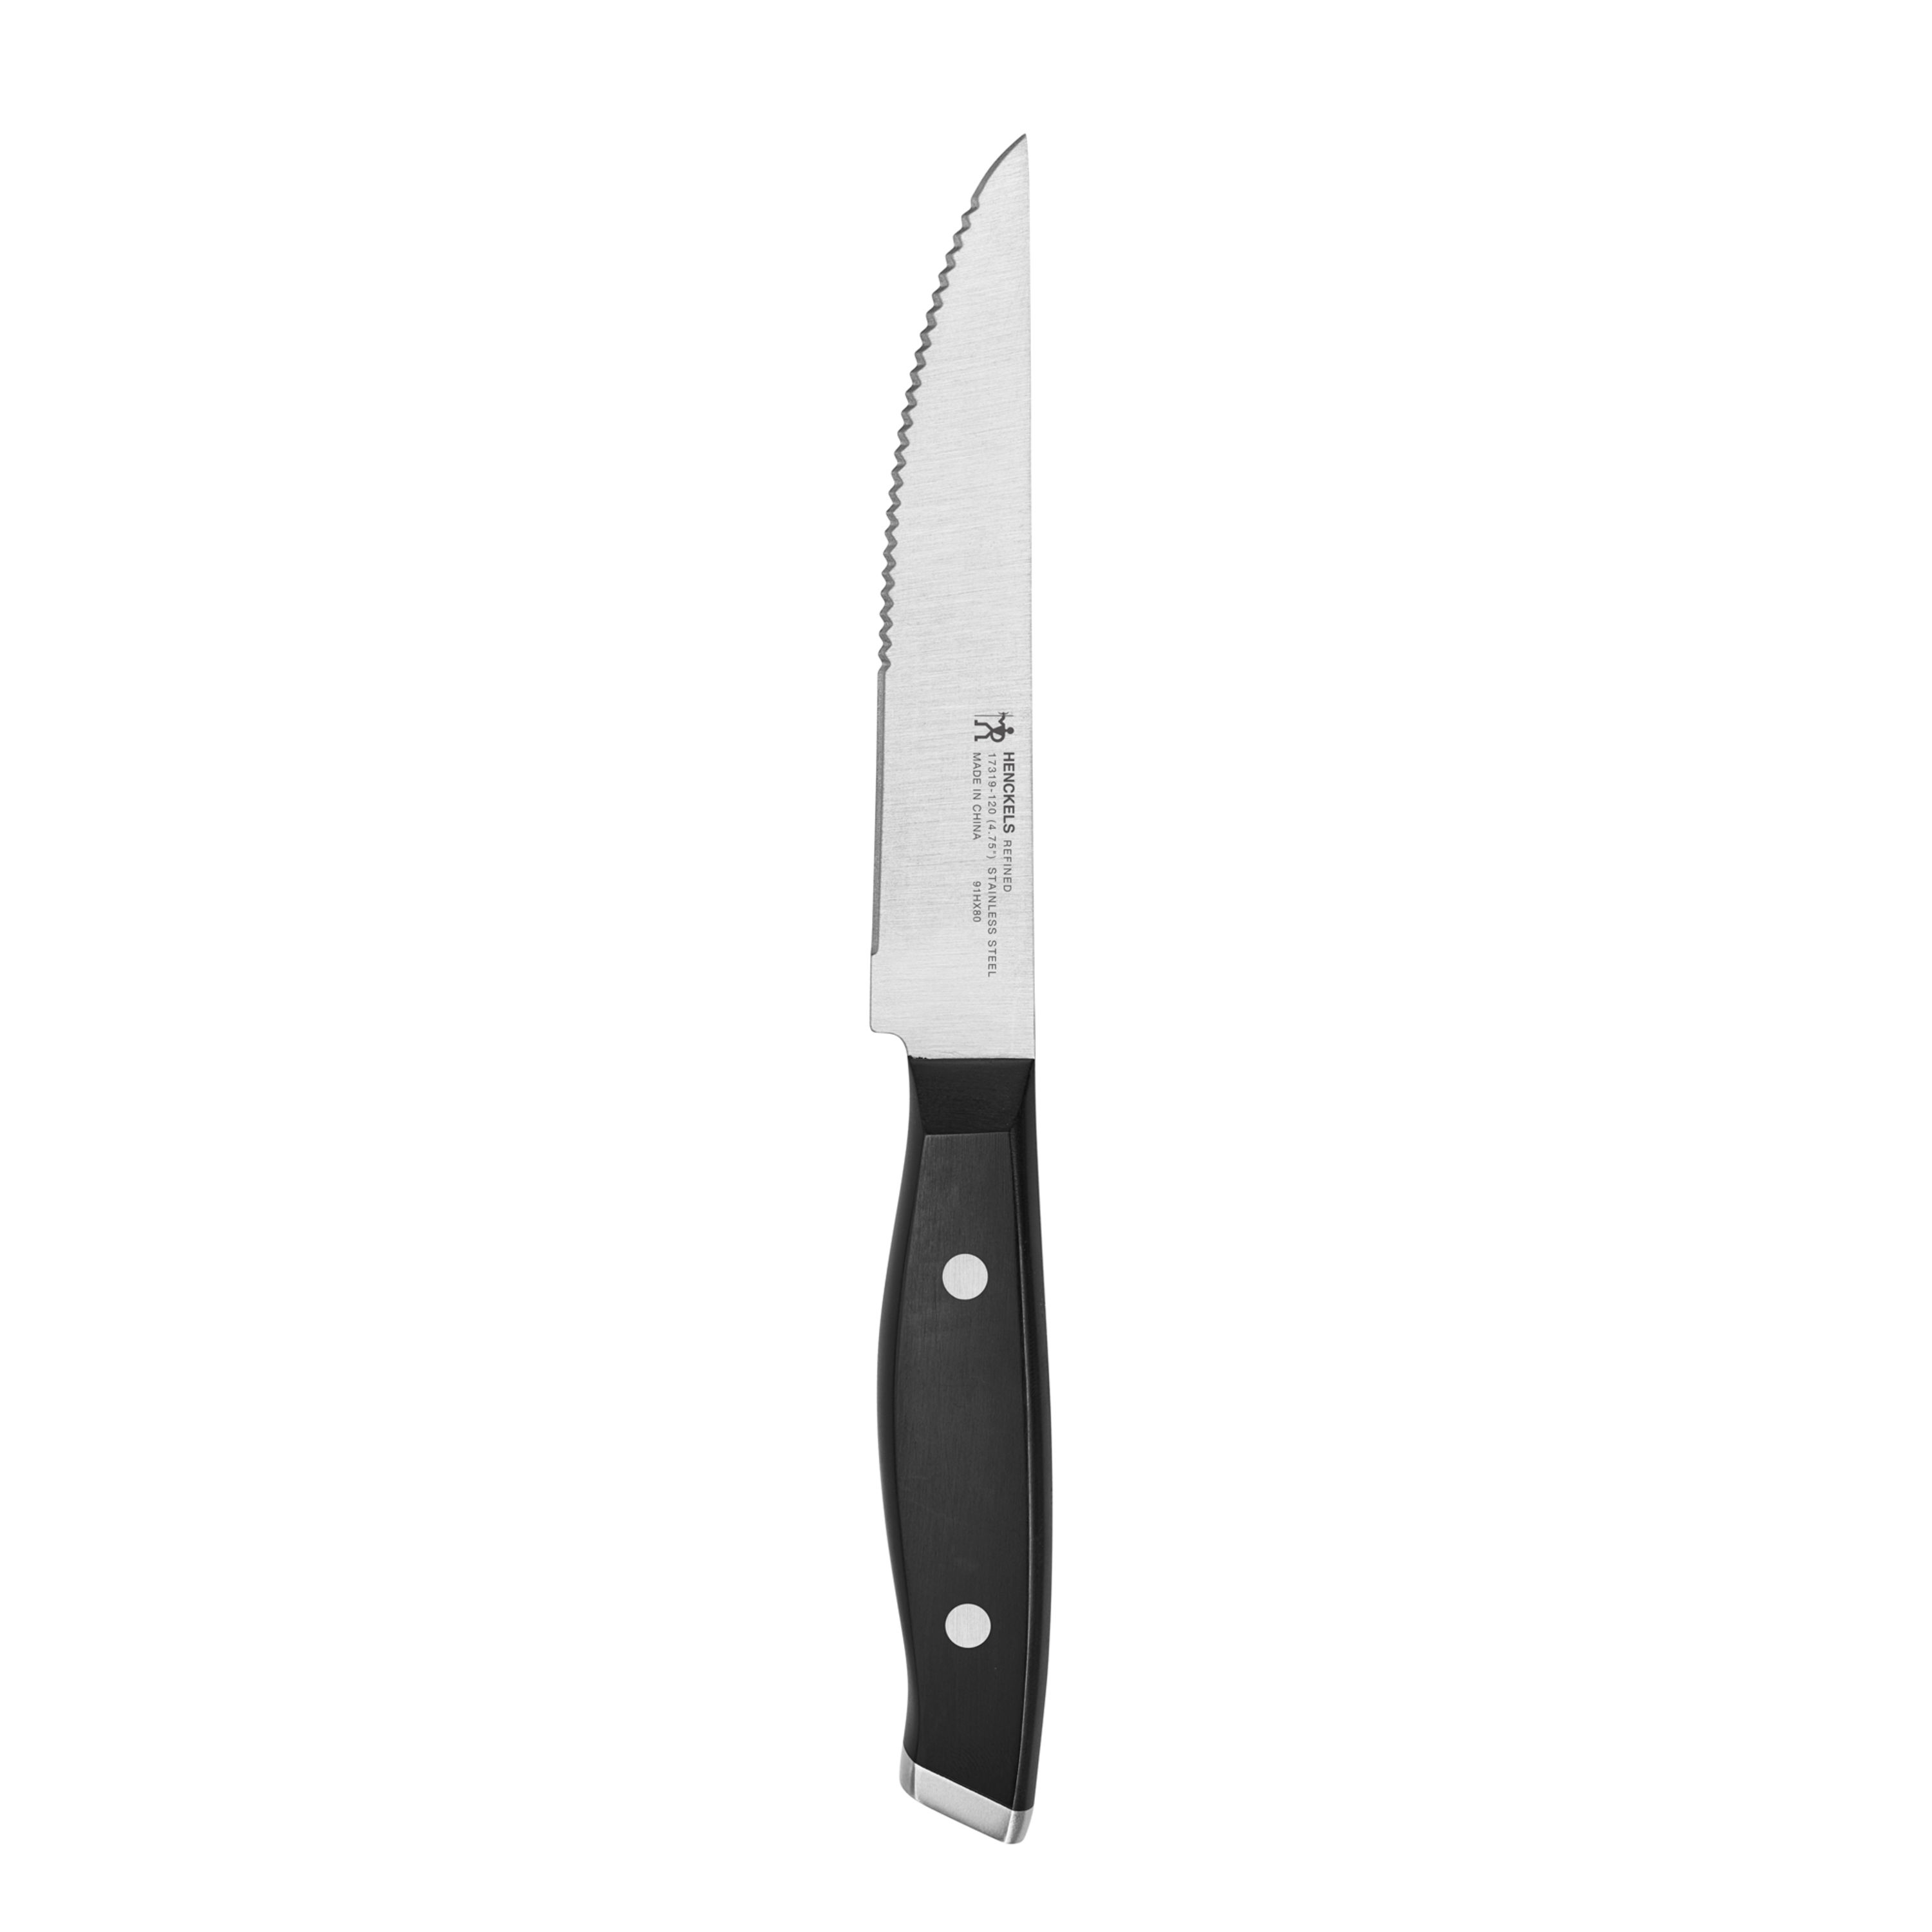 Clipper Steak Knives 5 Commercial Serrated Restaurant Stainless